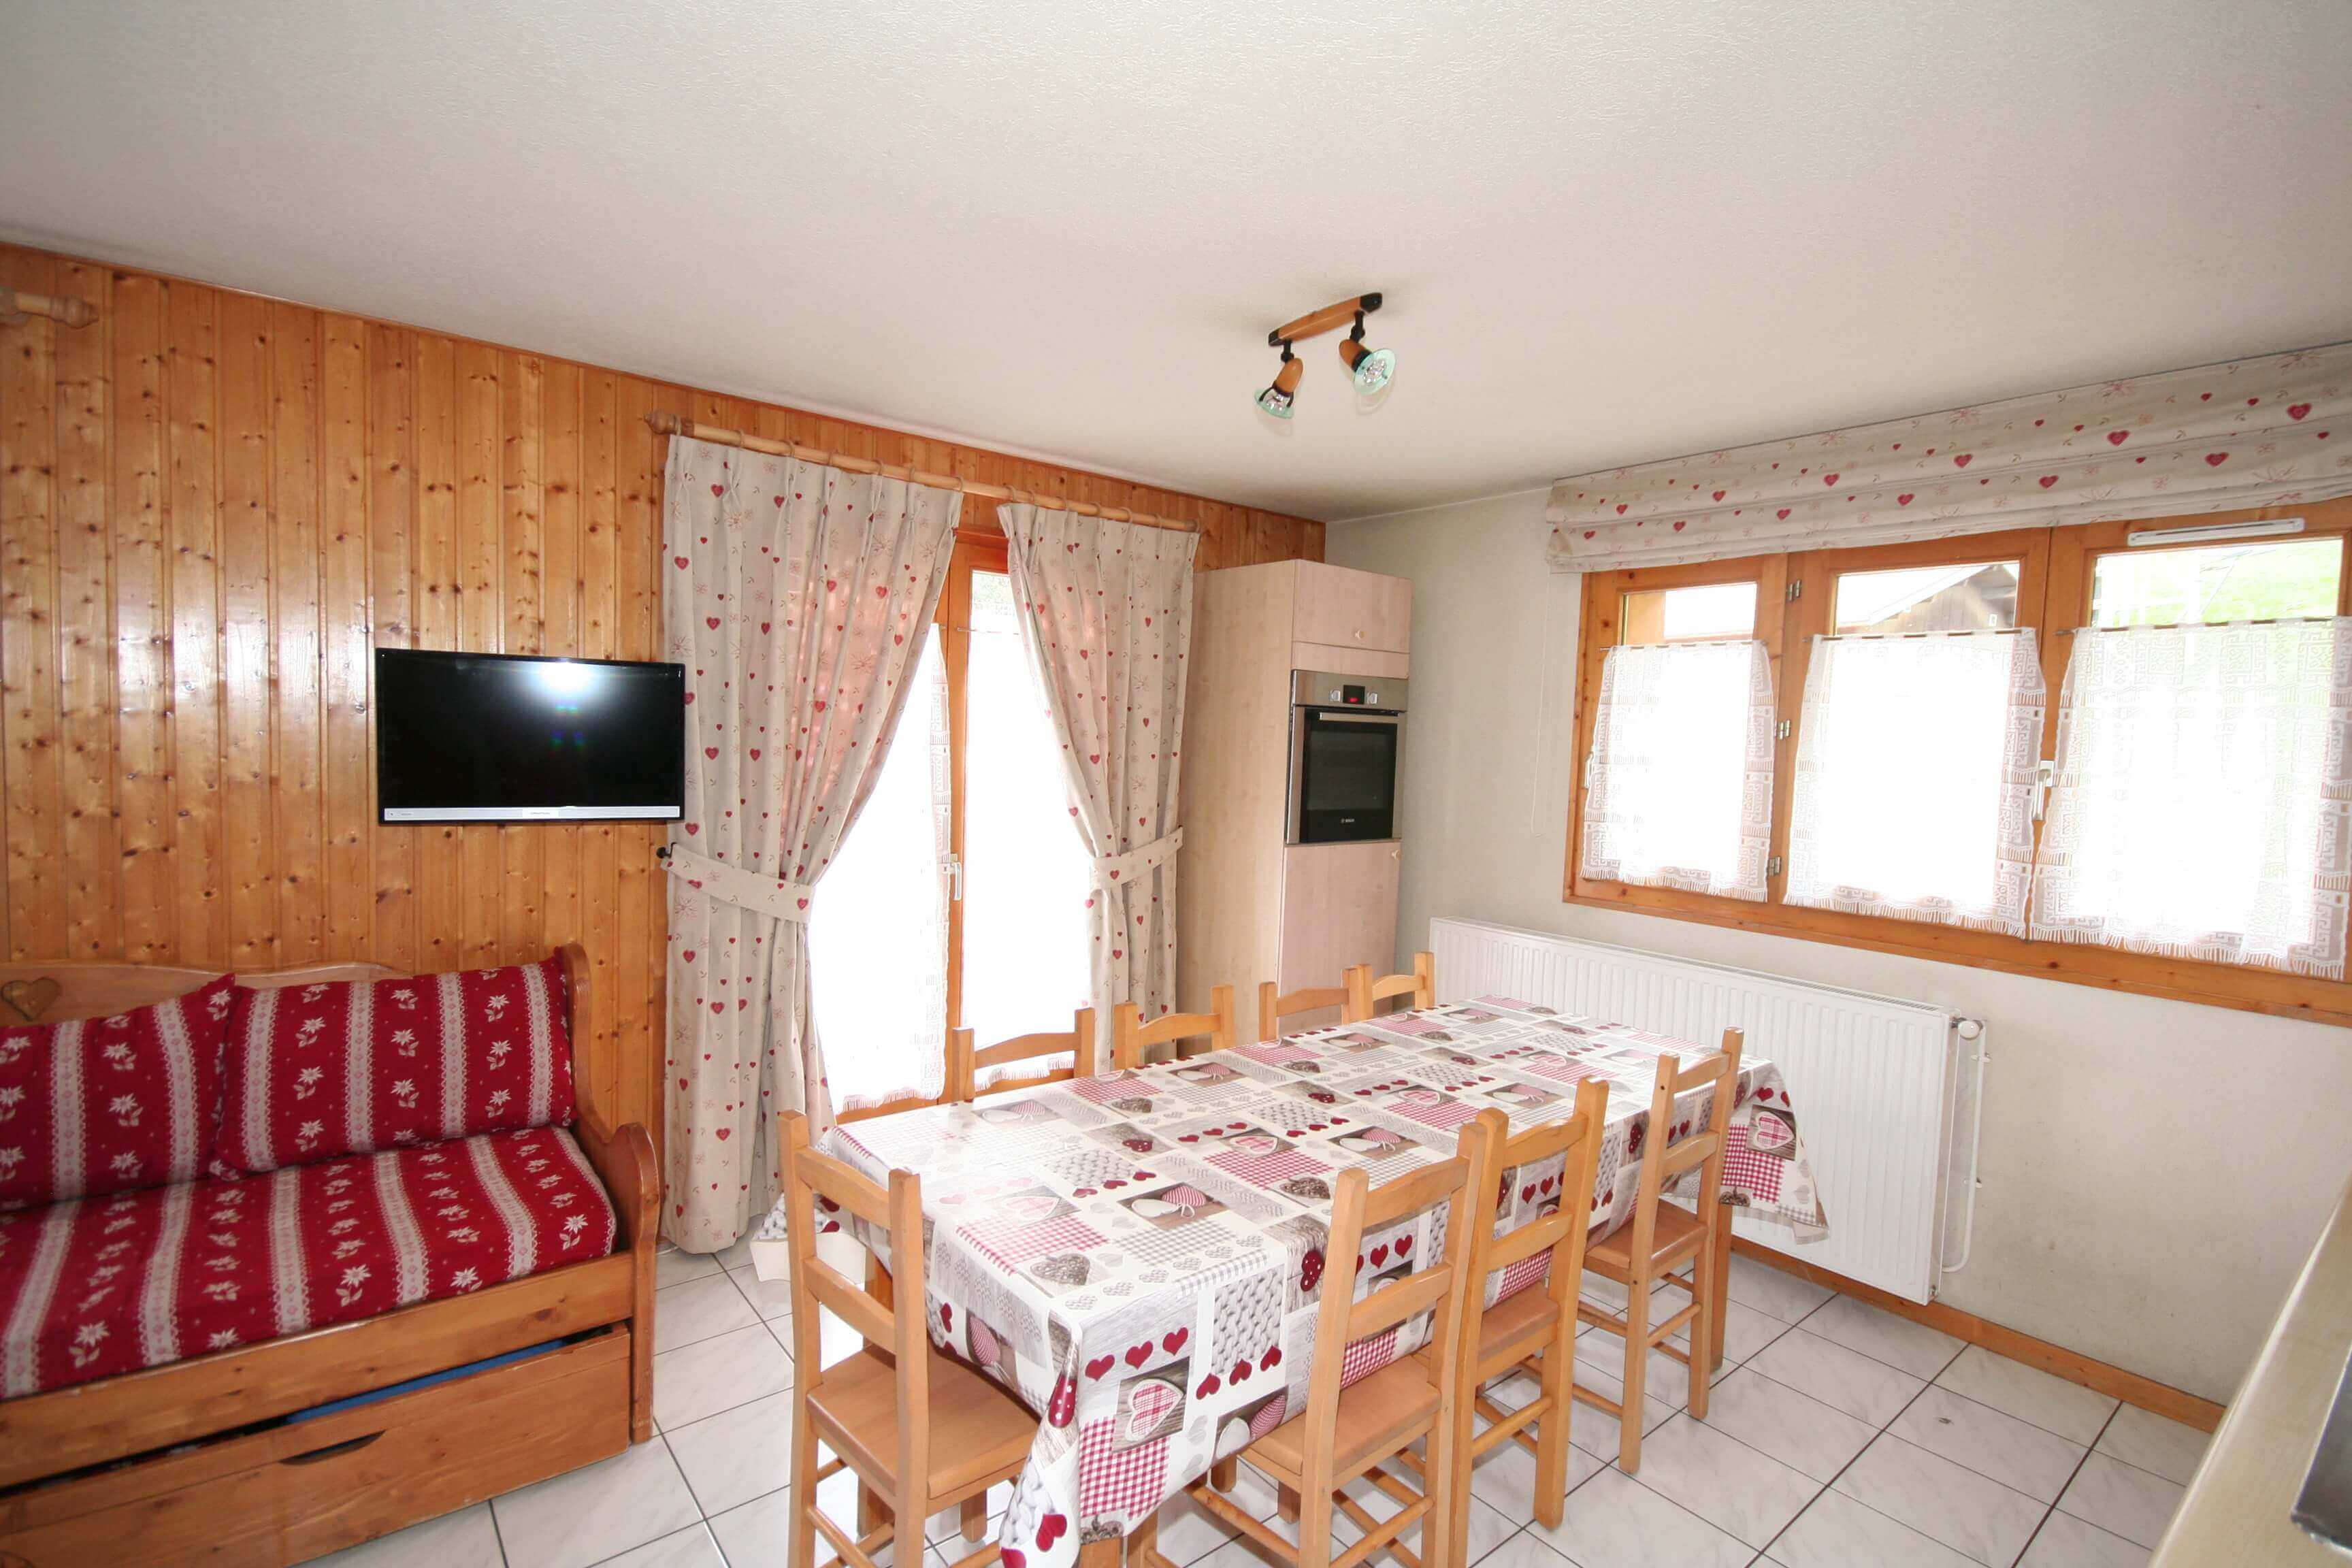 Stay - 4 Rooms en duplex Echo des Montagnes - Rent flats chatel